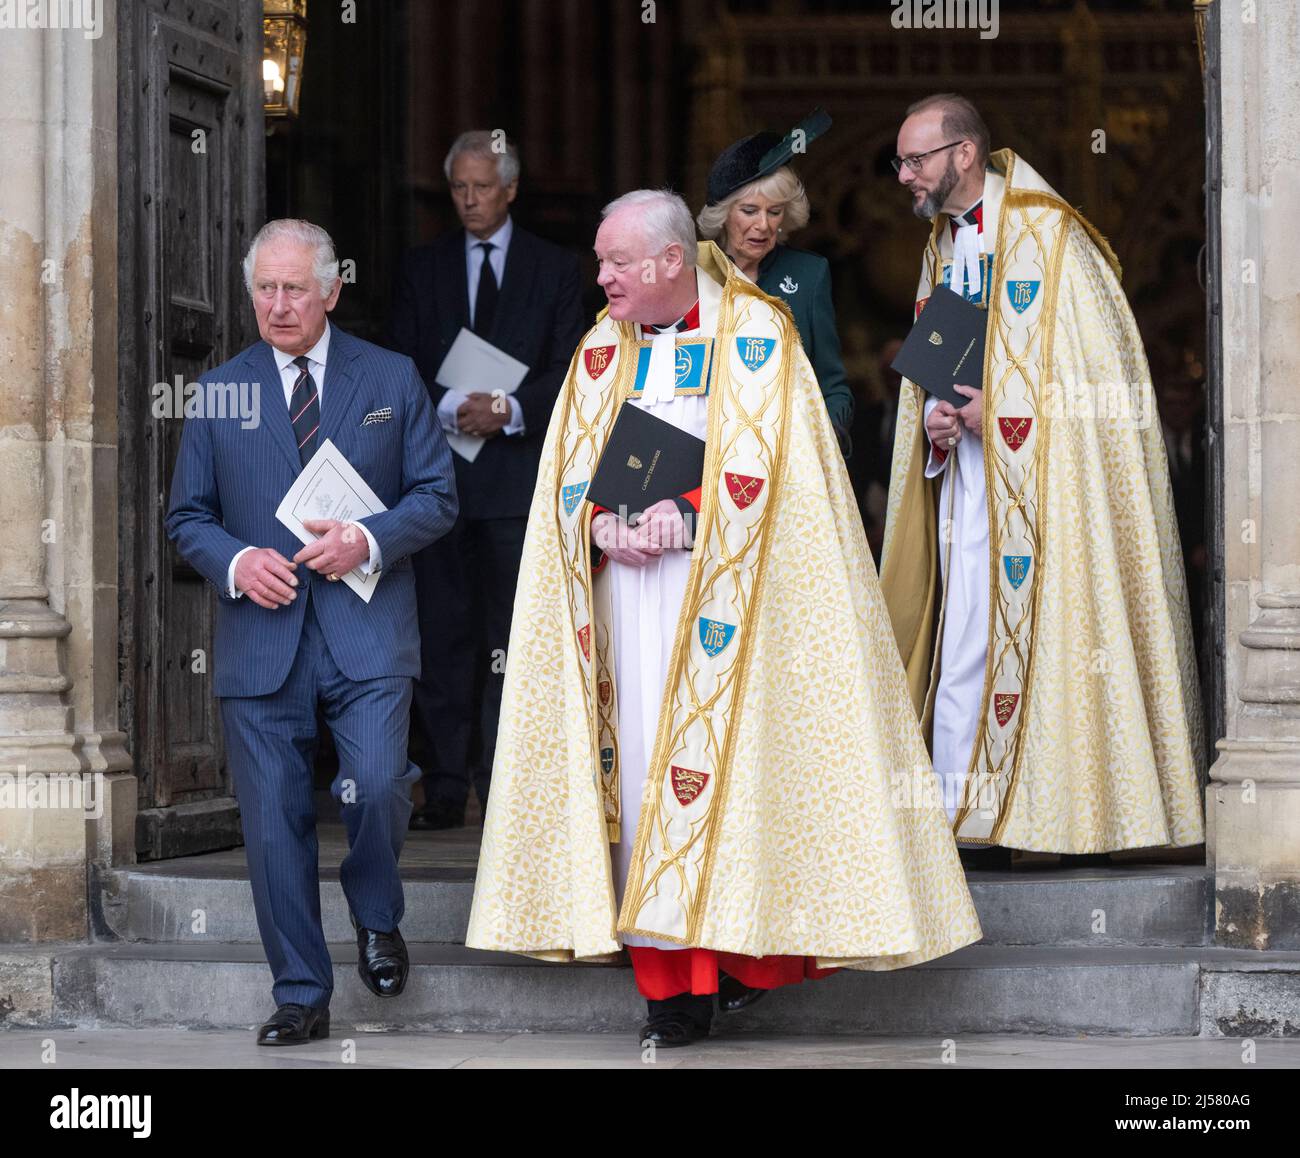 Londres, Royaume-Uni. 29 mars 2022. Le prince Charles, prince de Galles et Camilla, duchesse de Cornwall, assistent à un service commémoratif pour le prince Philip, duc d'EDI Banque D'Images